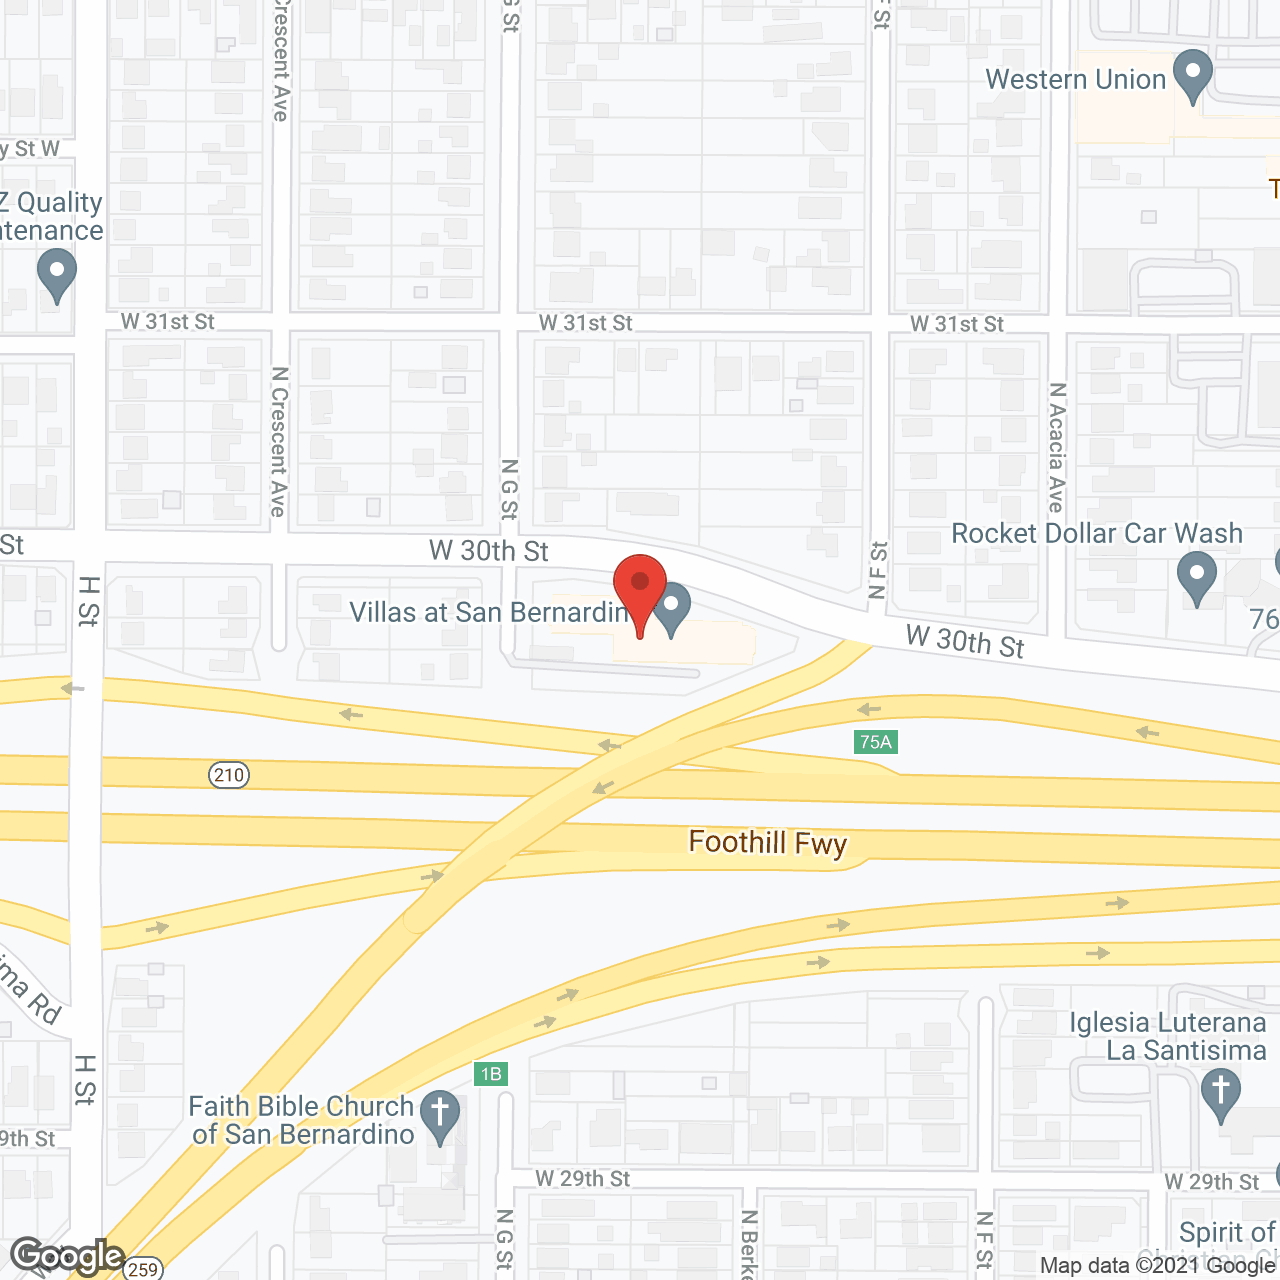 Villas At San Bernardino in google map